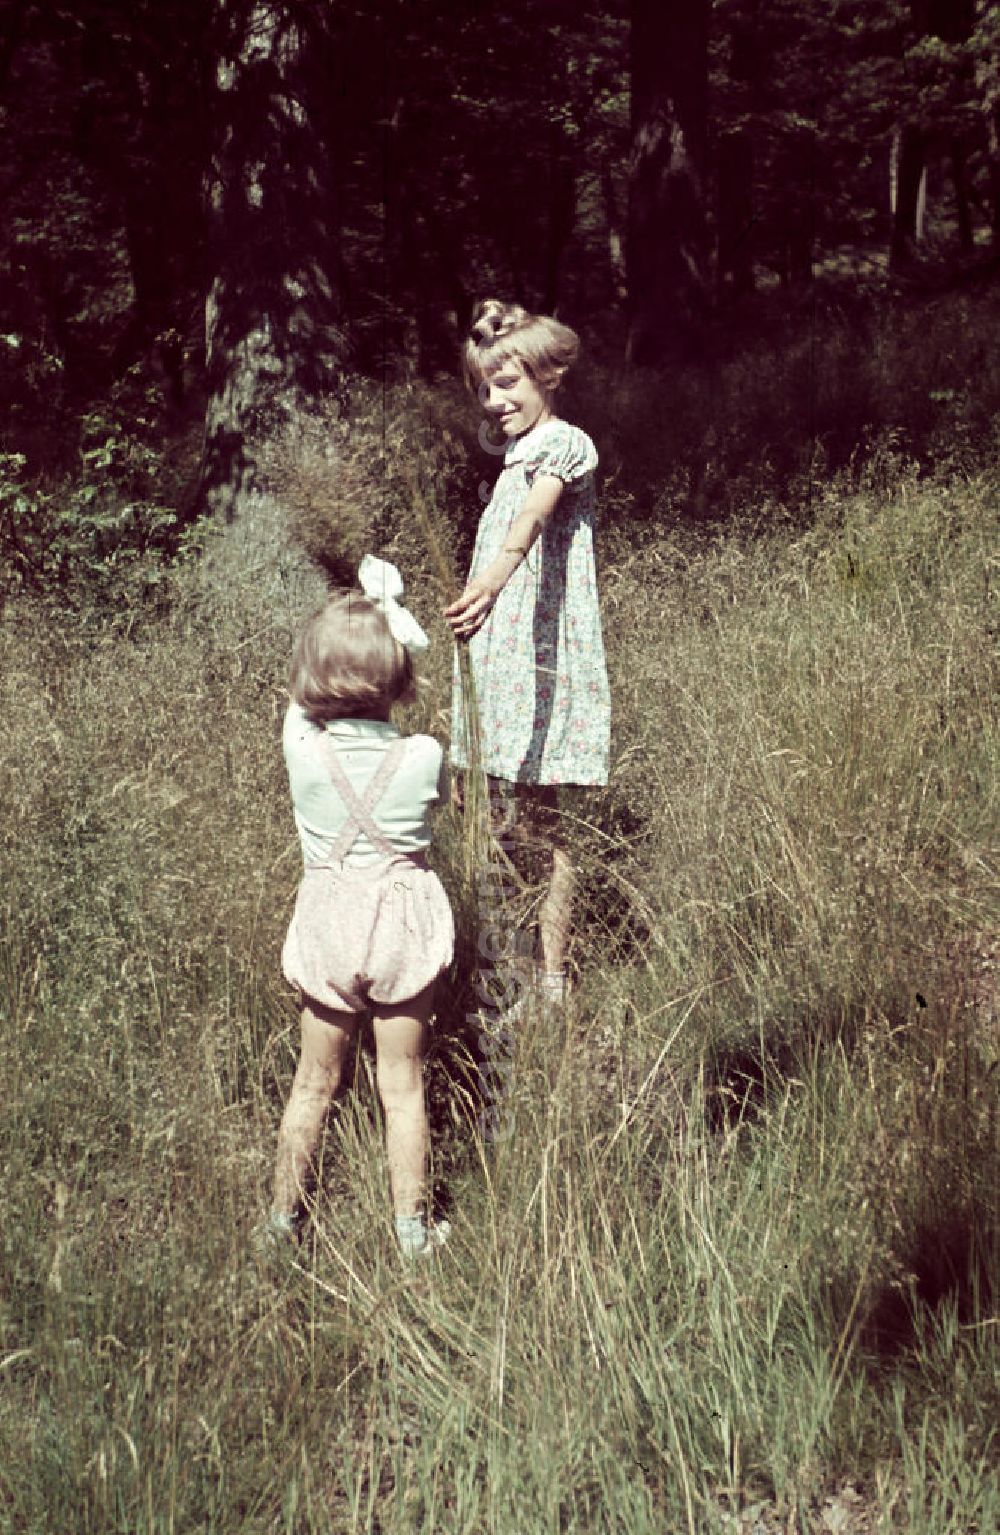 GDR picture archive: Siegen - Mädchen spielen auf einer Wiese in Siegen-Weidenau. Girls are playing on a meadow.